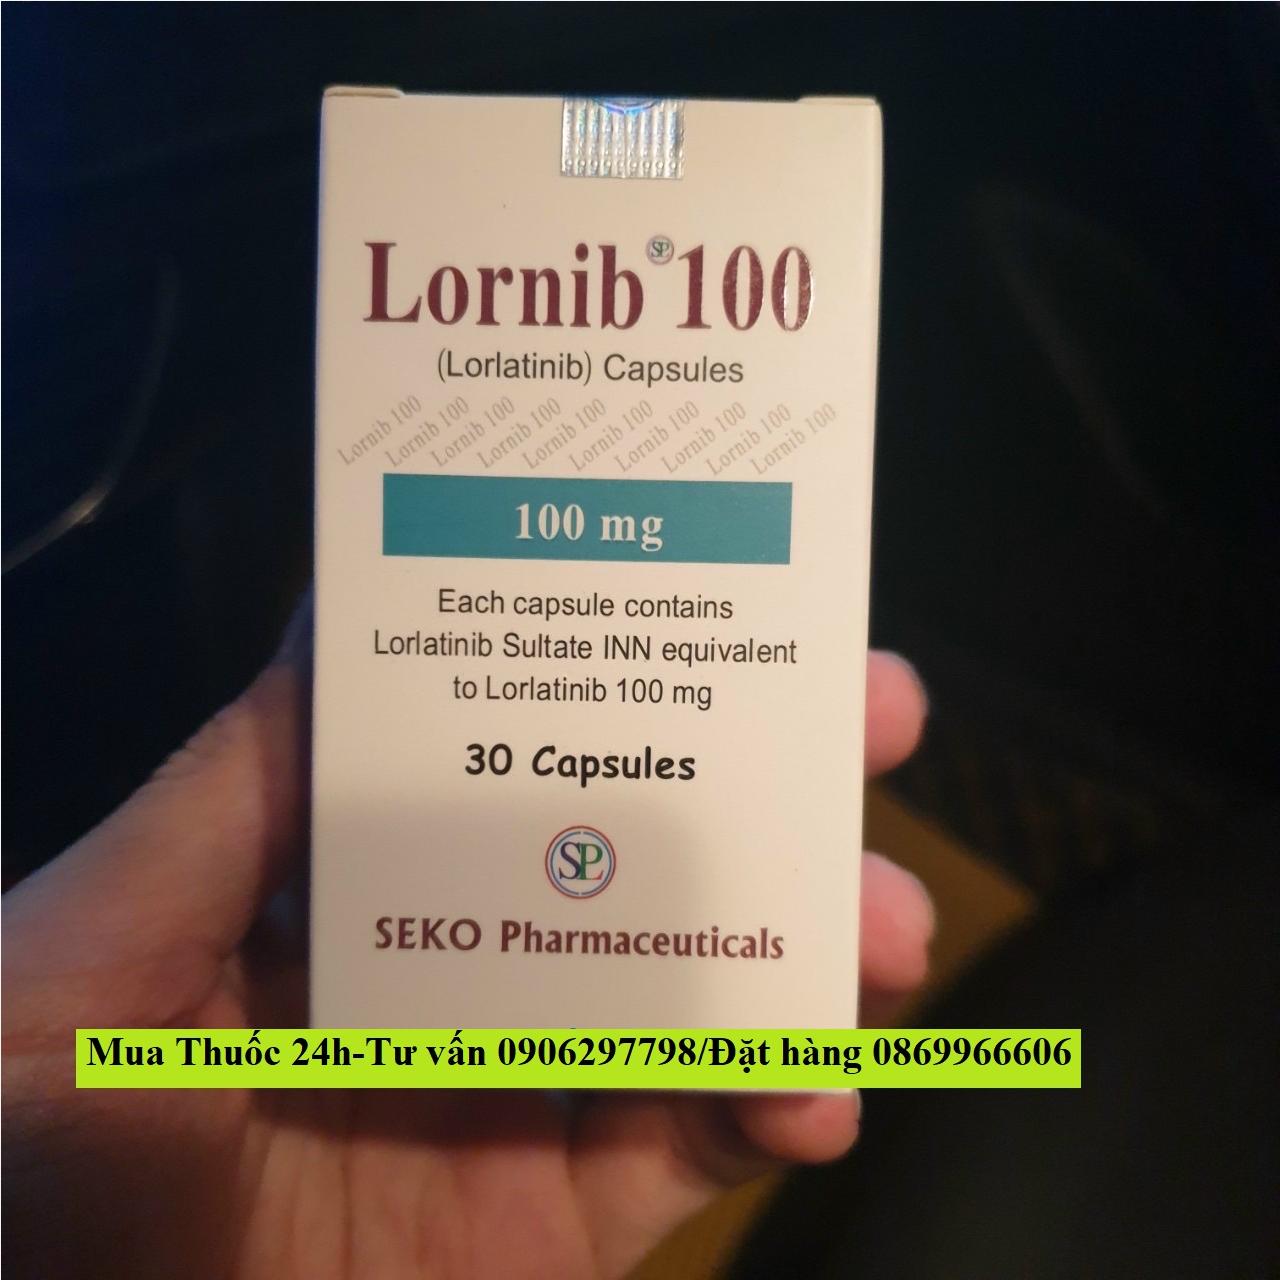 Thuốc Lornib 100 Lorlatinib 100mg giá bao nhiêu mua ở đâu?